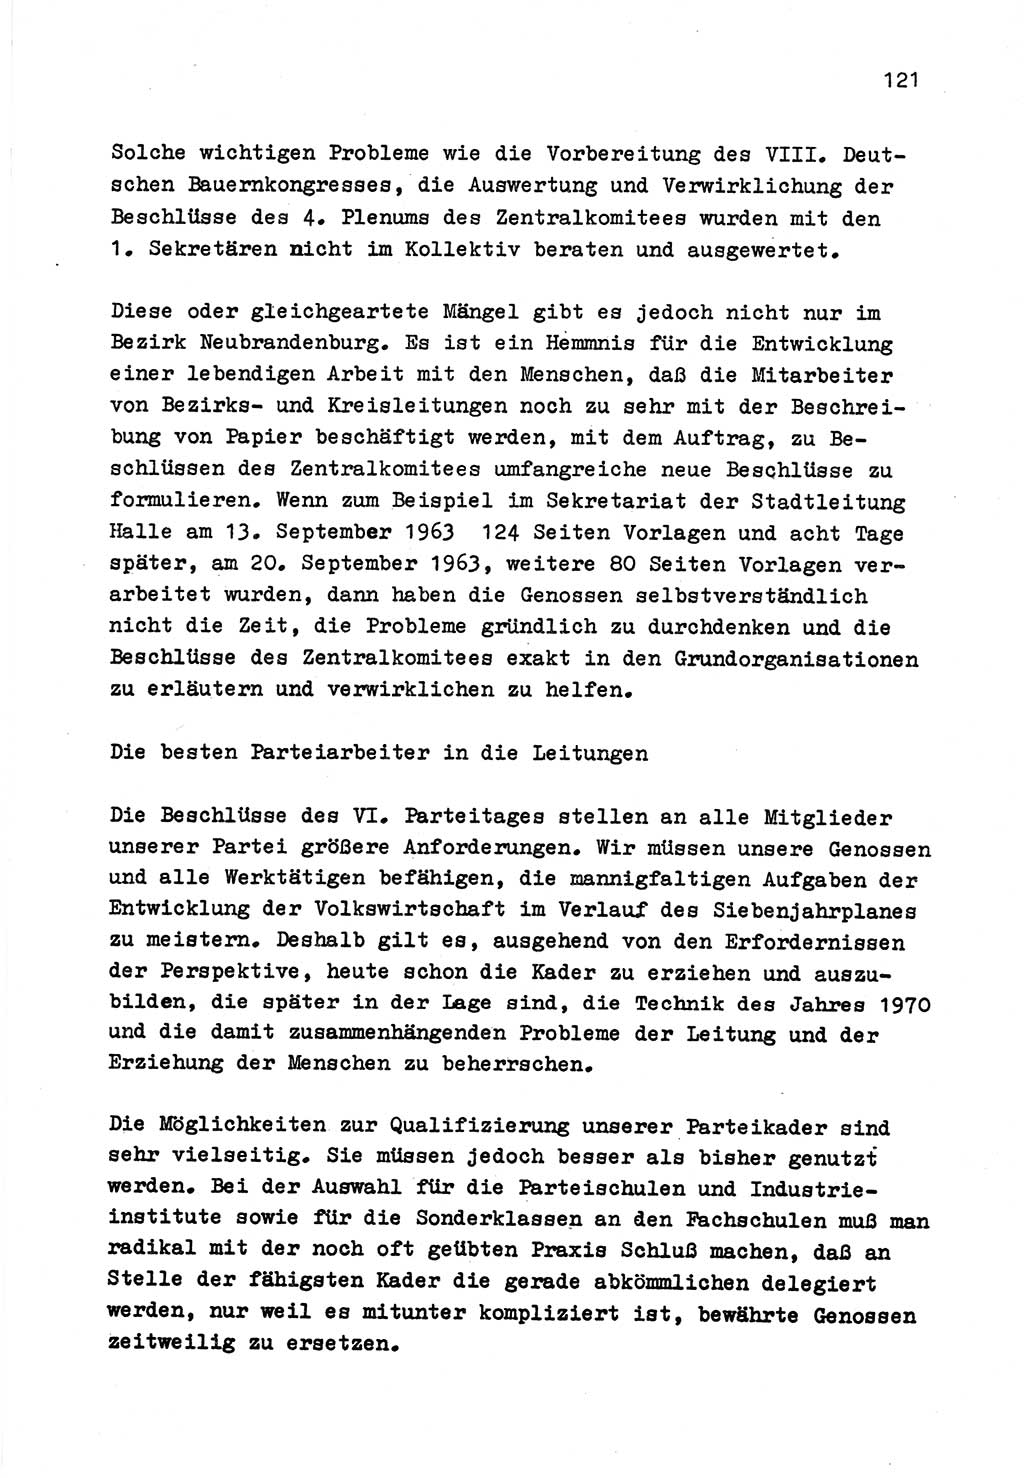 Zu Fragen der Parteiarbeit [Sozialistische Einheitspartei Deutschlands (SED) Deutsche Demokratische Republik (DDR)] 1979, Seite 121 (Fr. PA SED DDR 1979, S. 121)